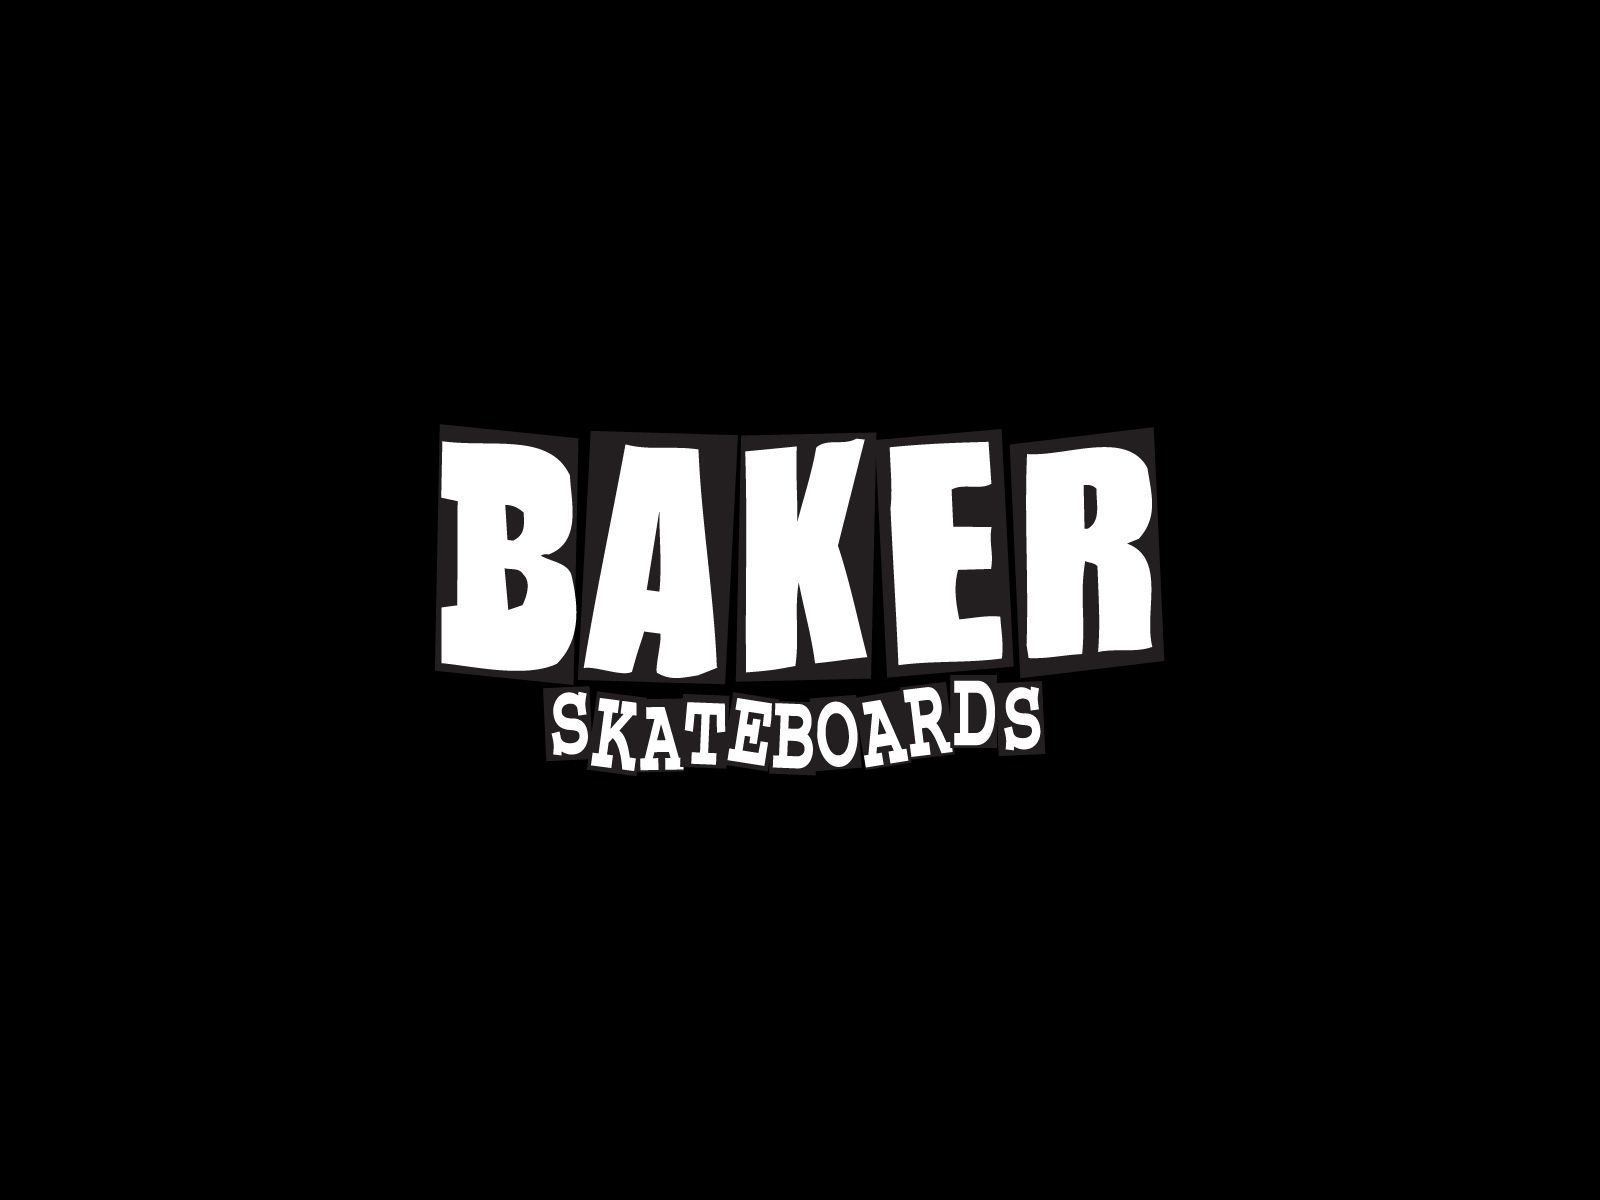 Skateboarding wallpapers, skateboard wallpapers, sk8 walls | Find ...